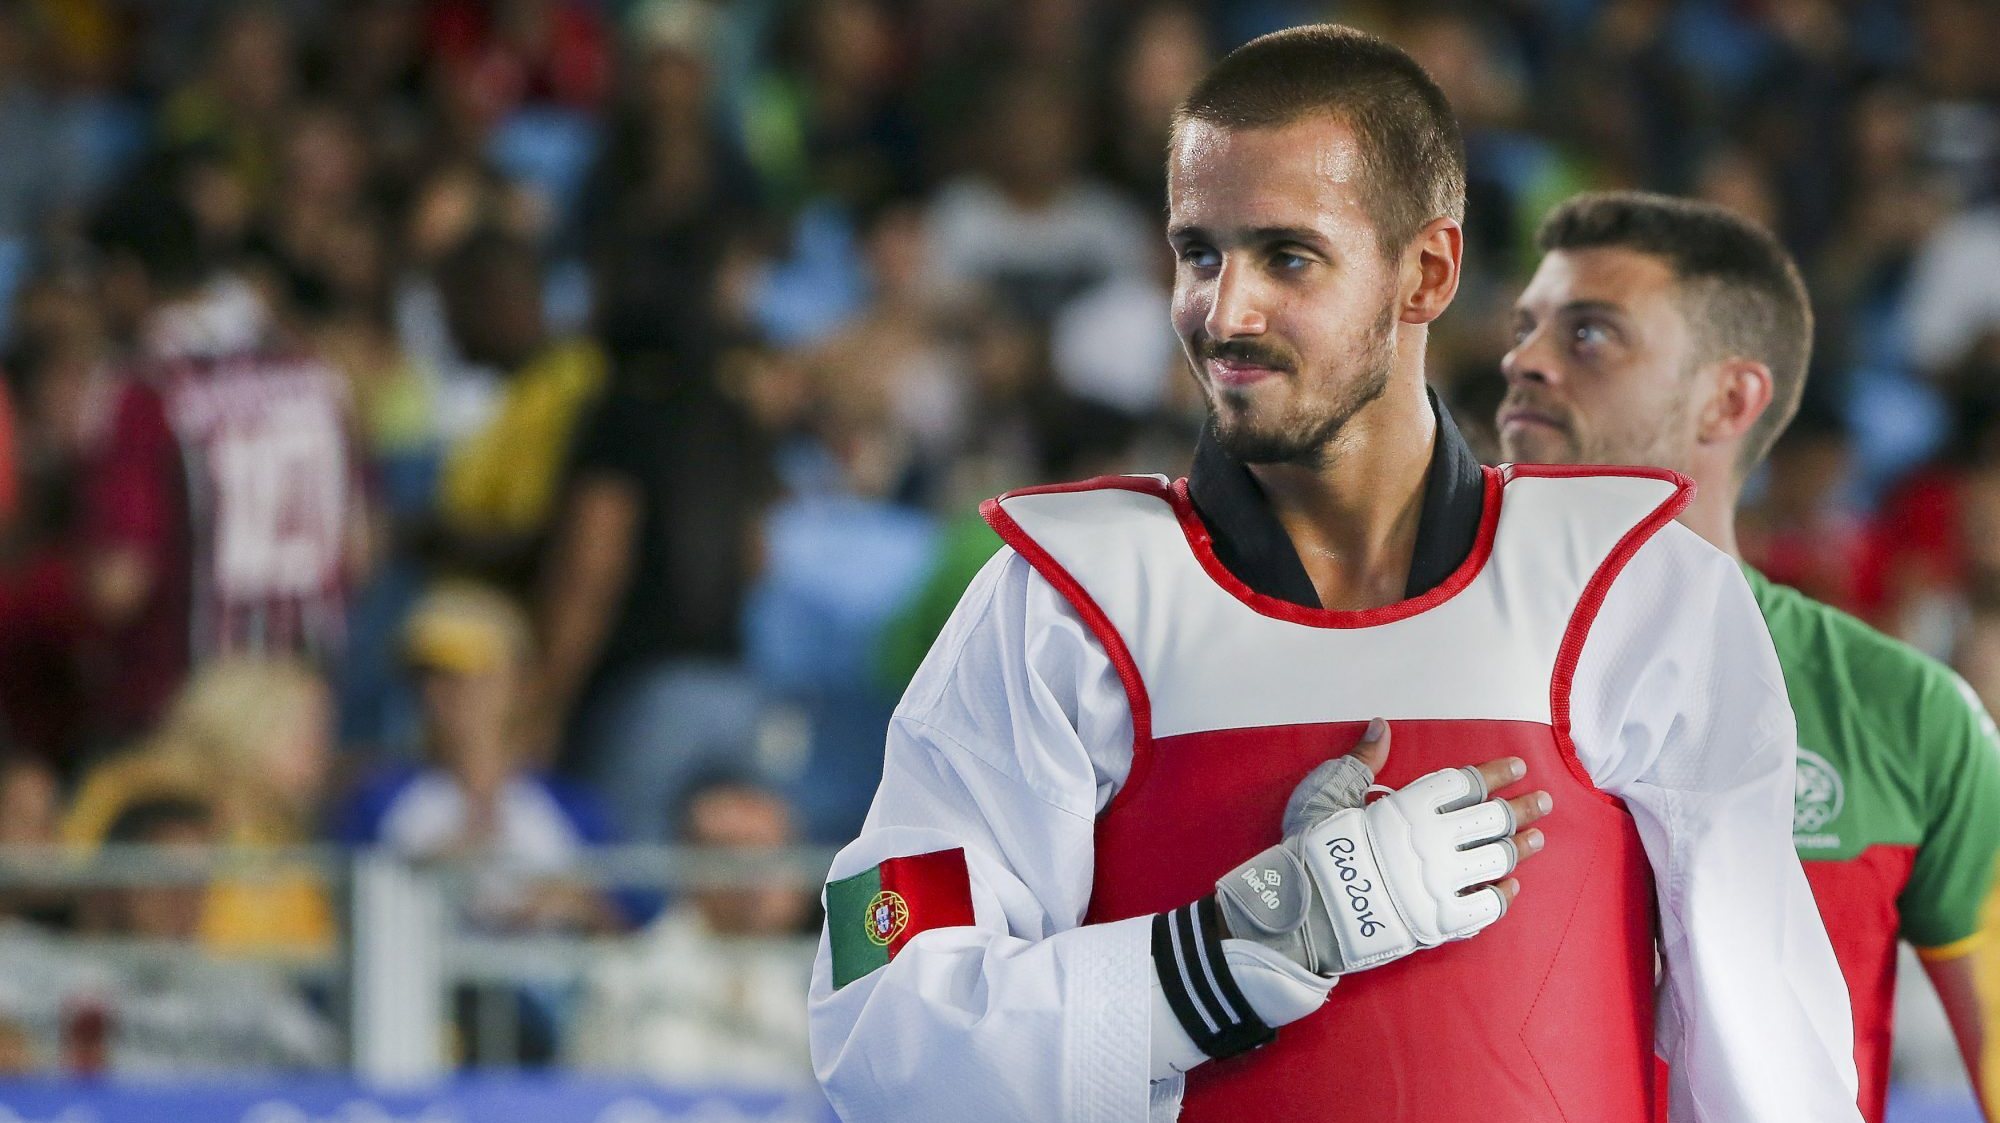 Rui Bragança foi o primeiro português a representar Portugal nos Jogos Olímpicos, no Rio de Janeiro em 2016